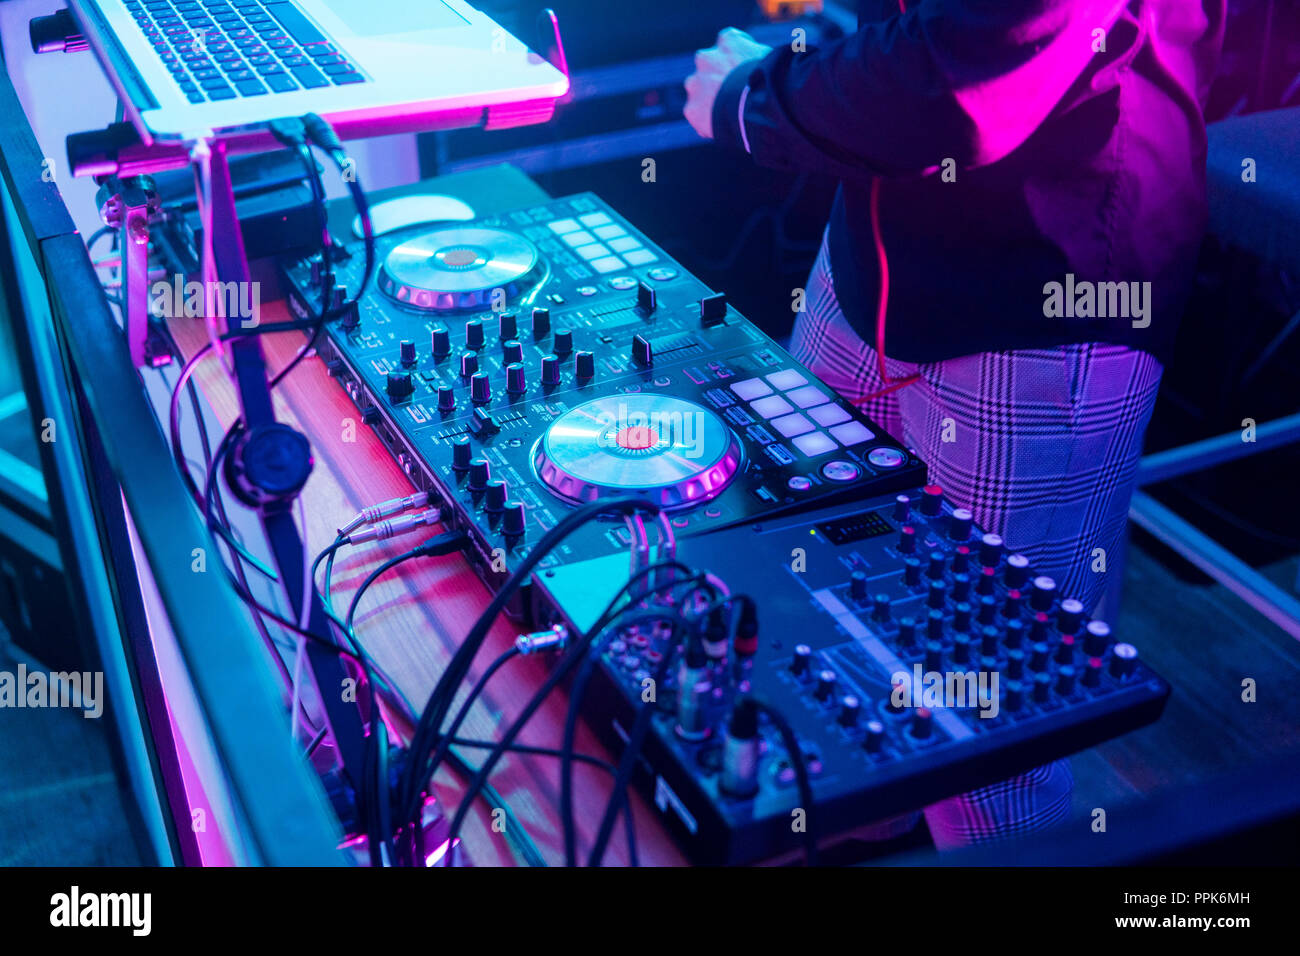 Painel Do Controlador Do Misturador Do DJ Para Jogar a Música E Partying  Imagem de Stock - Imagem de jogo, concerto: 129519997